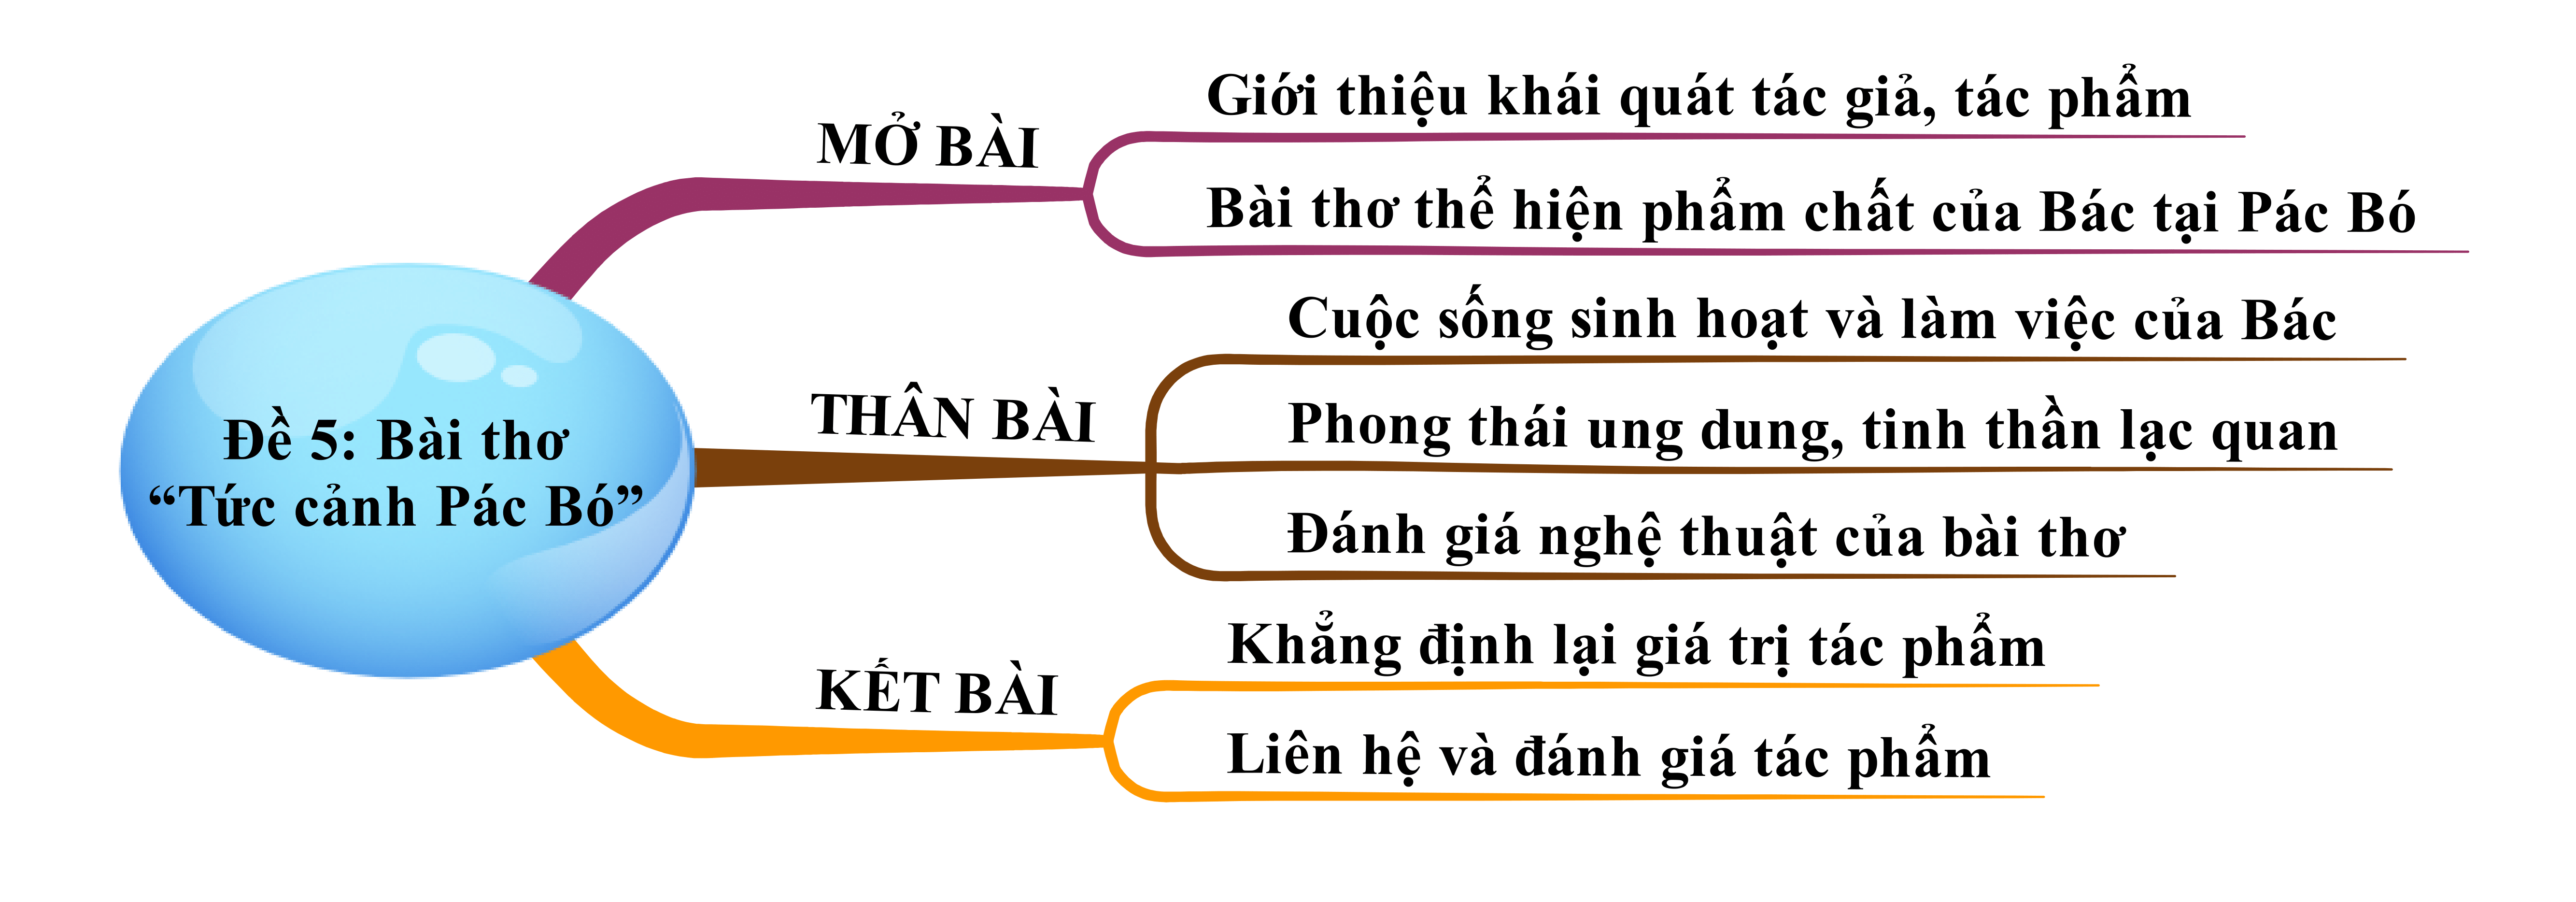 Top 8 bài Bài thơ Tức cảnh Pác Bó của Hồ Chí Minh 2024 hay nhất